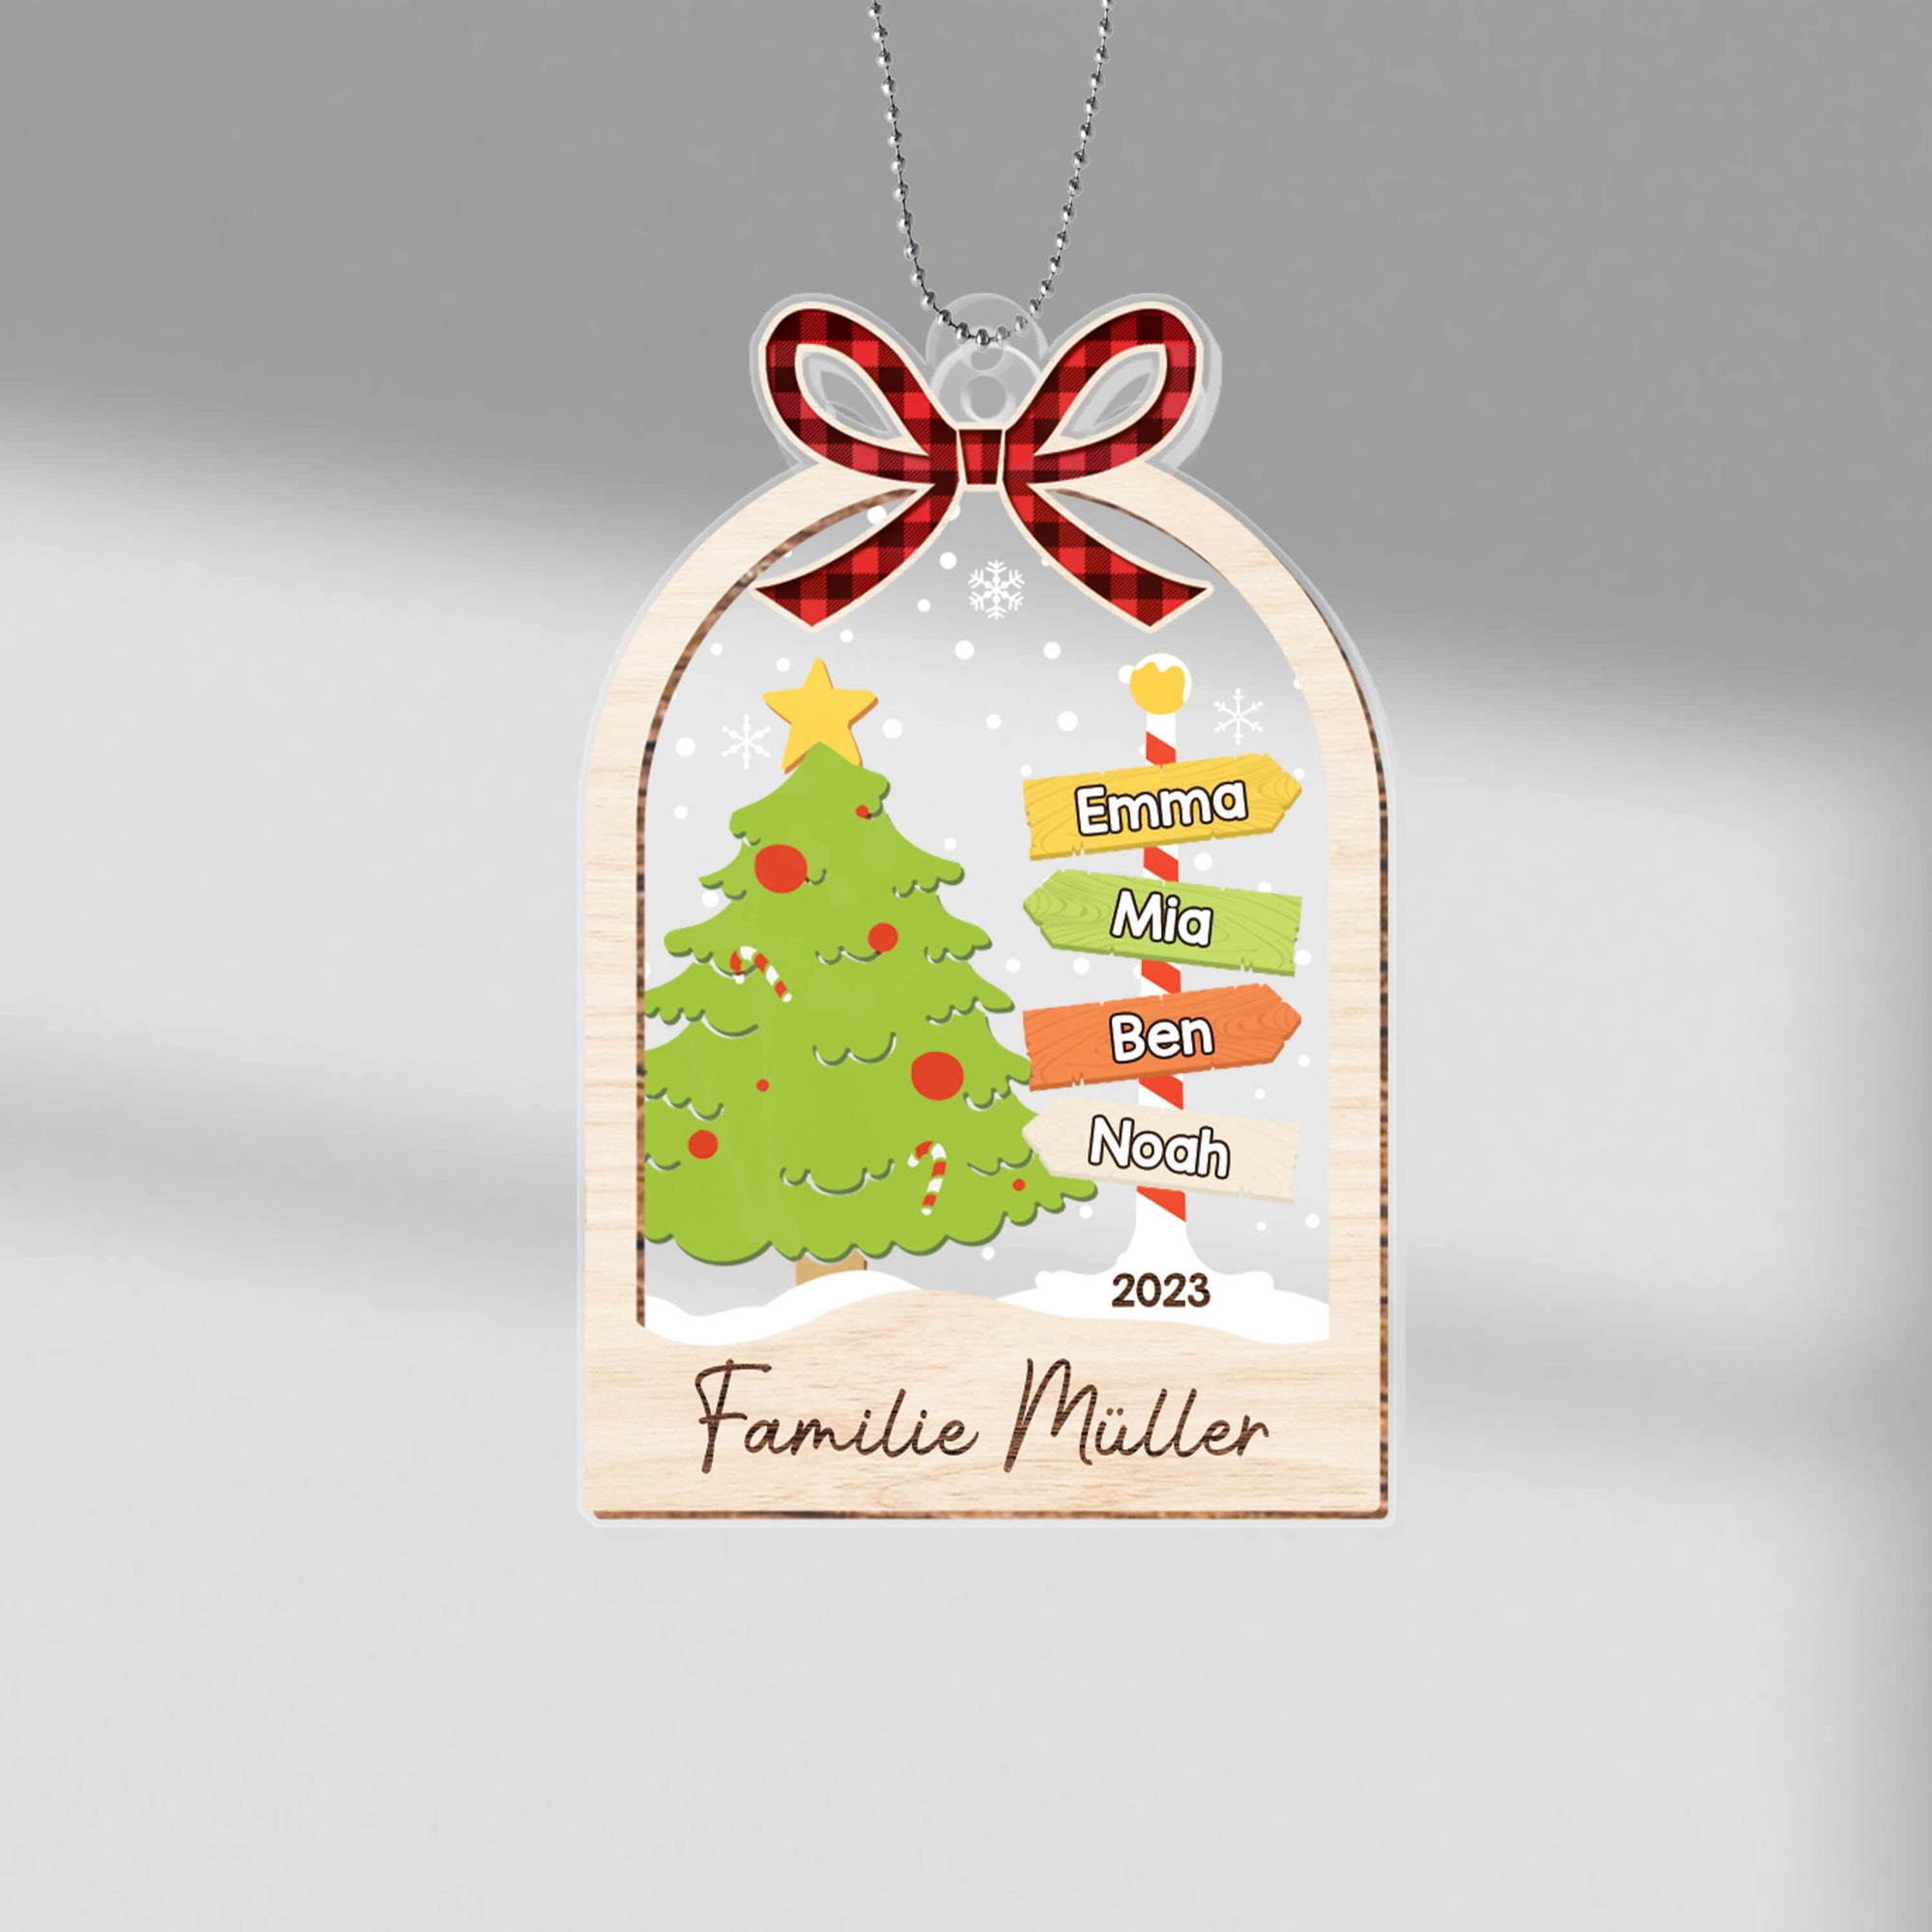 Die Familie Mit Weihnachtsbaum - Personalisiertes Geschenk | Ornament für die Familie